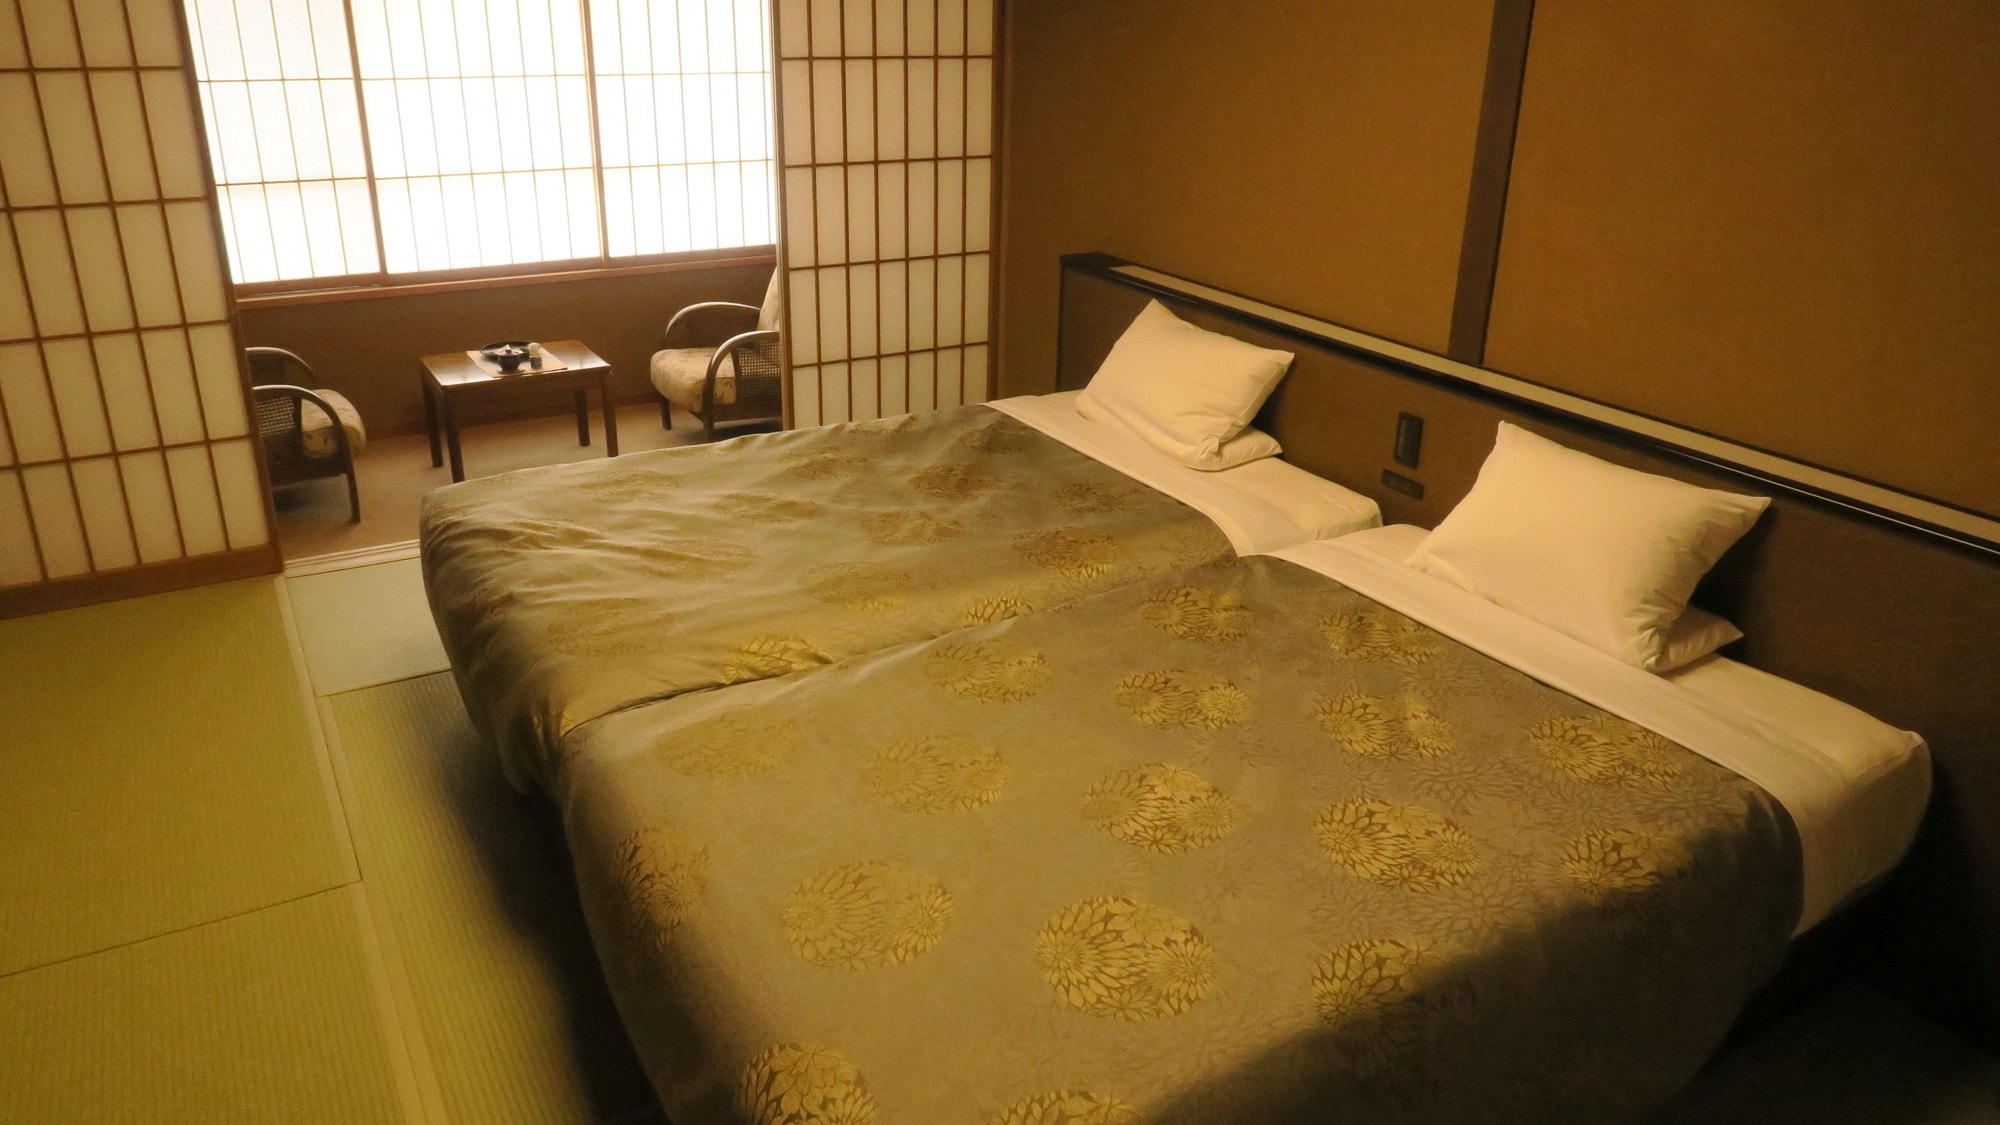  【니시칸】표준 일본식 방 침대 타입